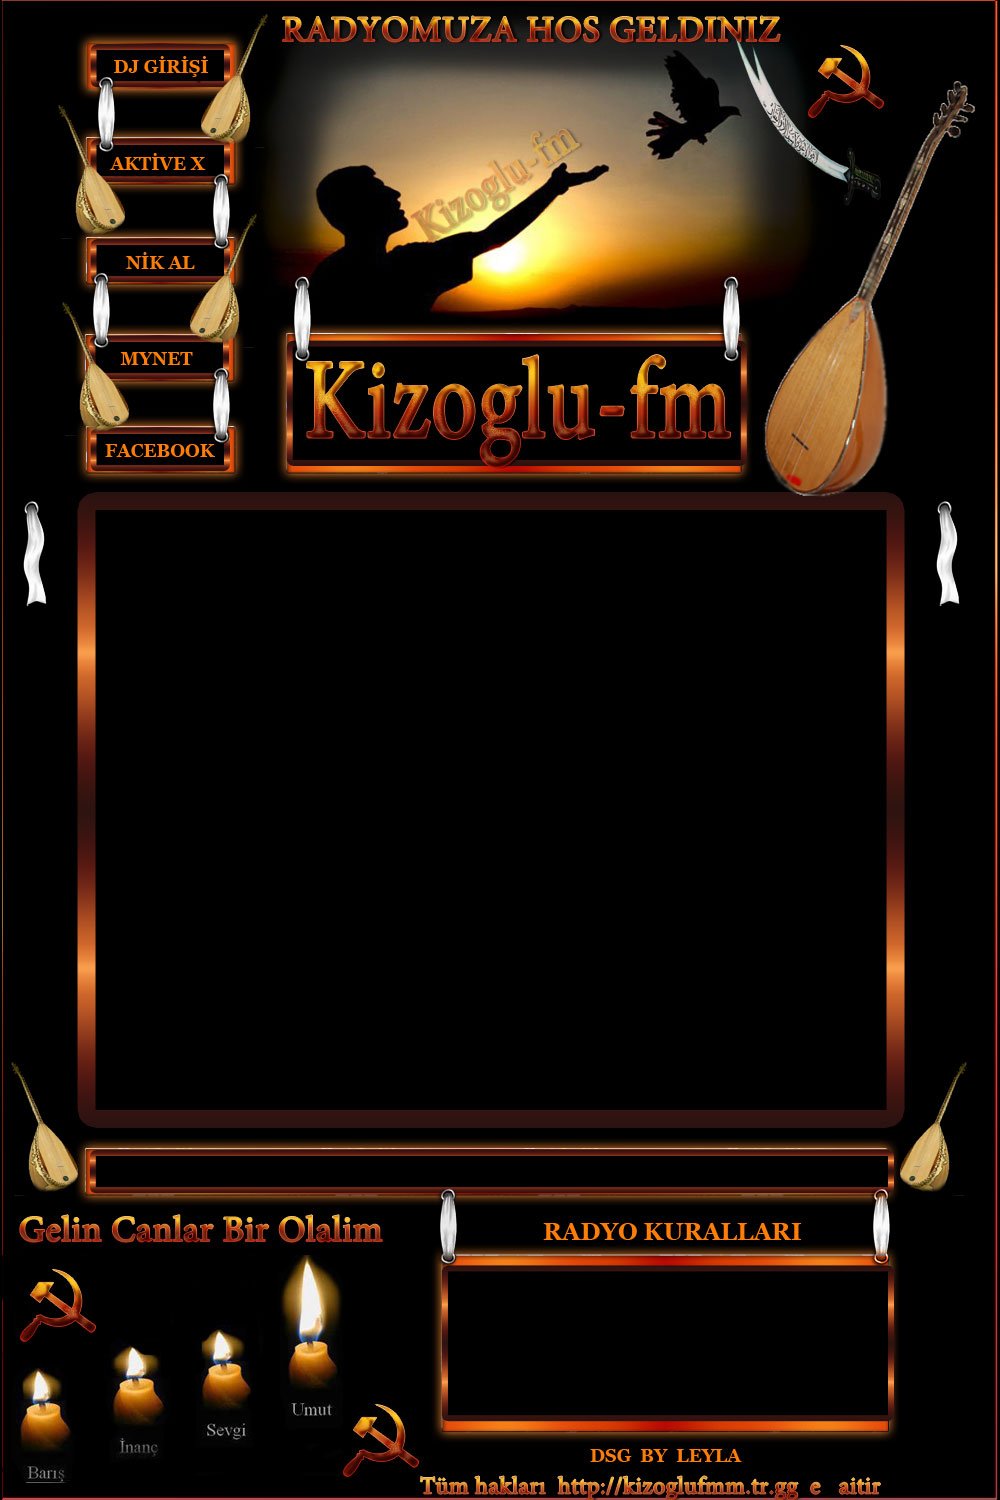 KIZOGLU-FM